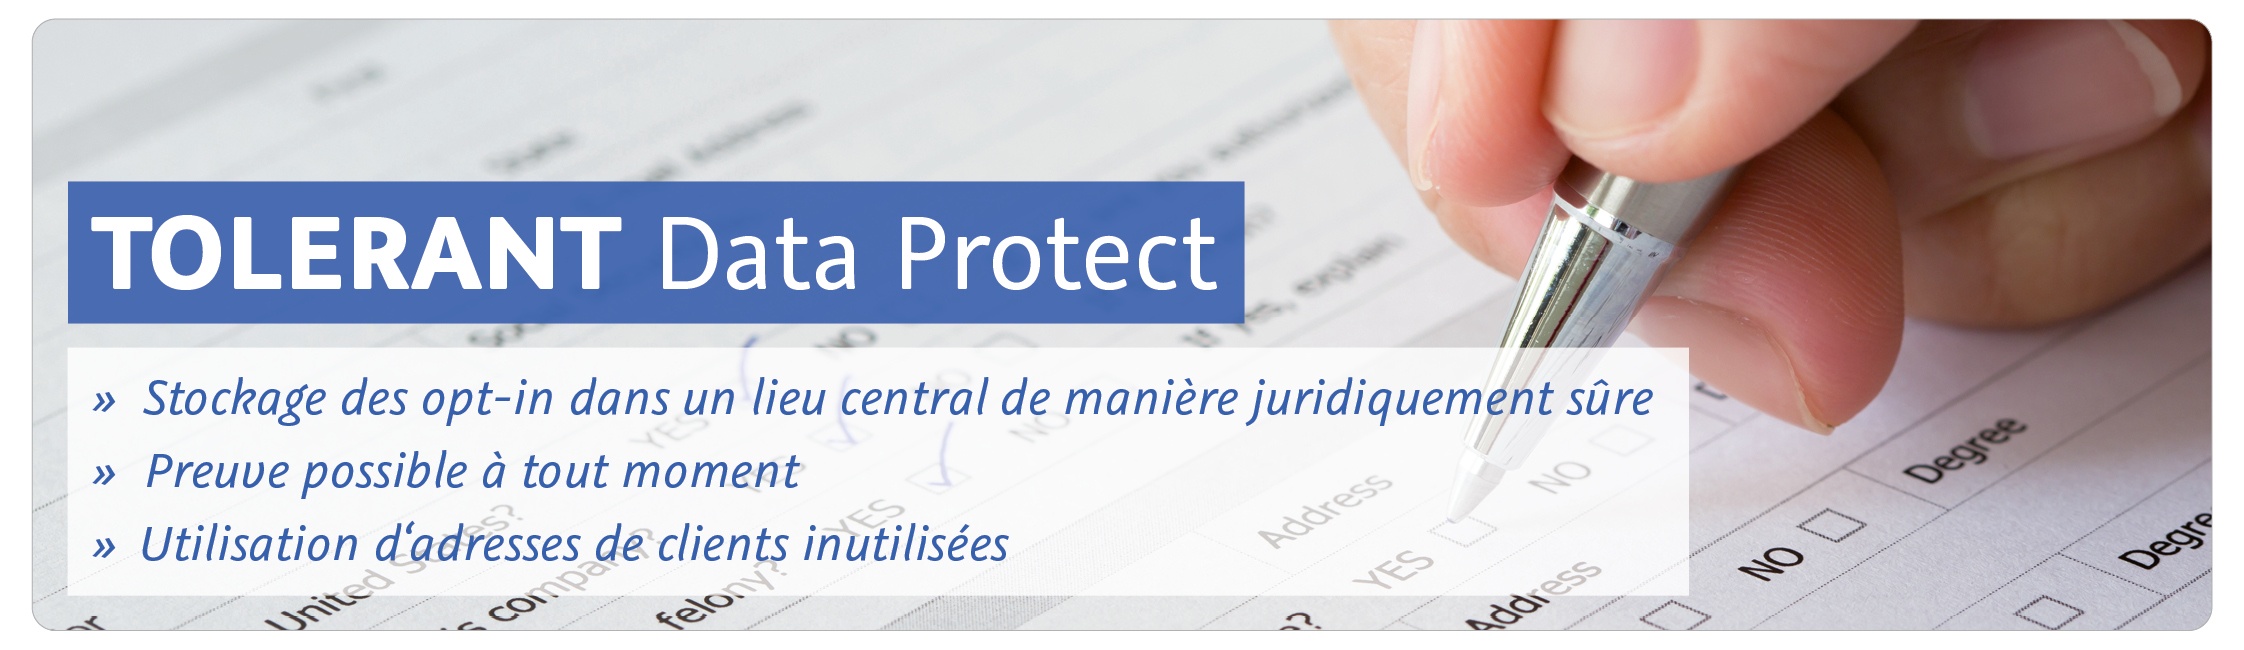 TOLERANT Data Protect: Stockage des opt-in dans un lieu central de manière juridiquement sûre, Preuve possible à tout moment, Utilisation d'adresses de clients inutilisées